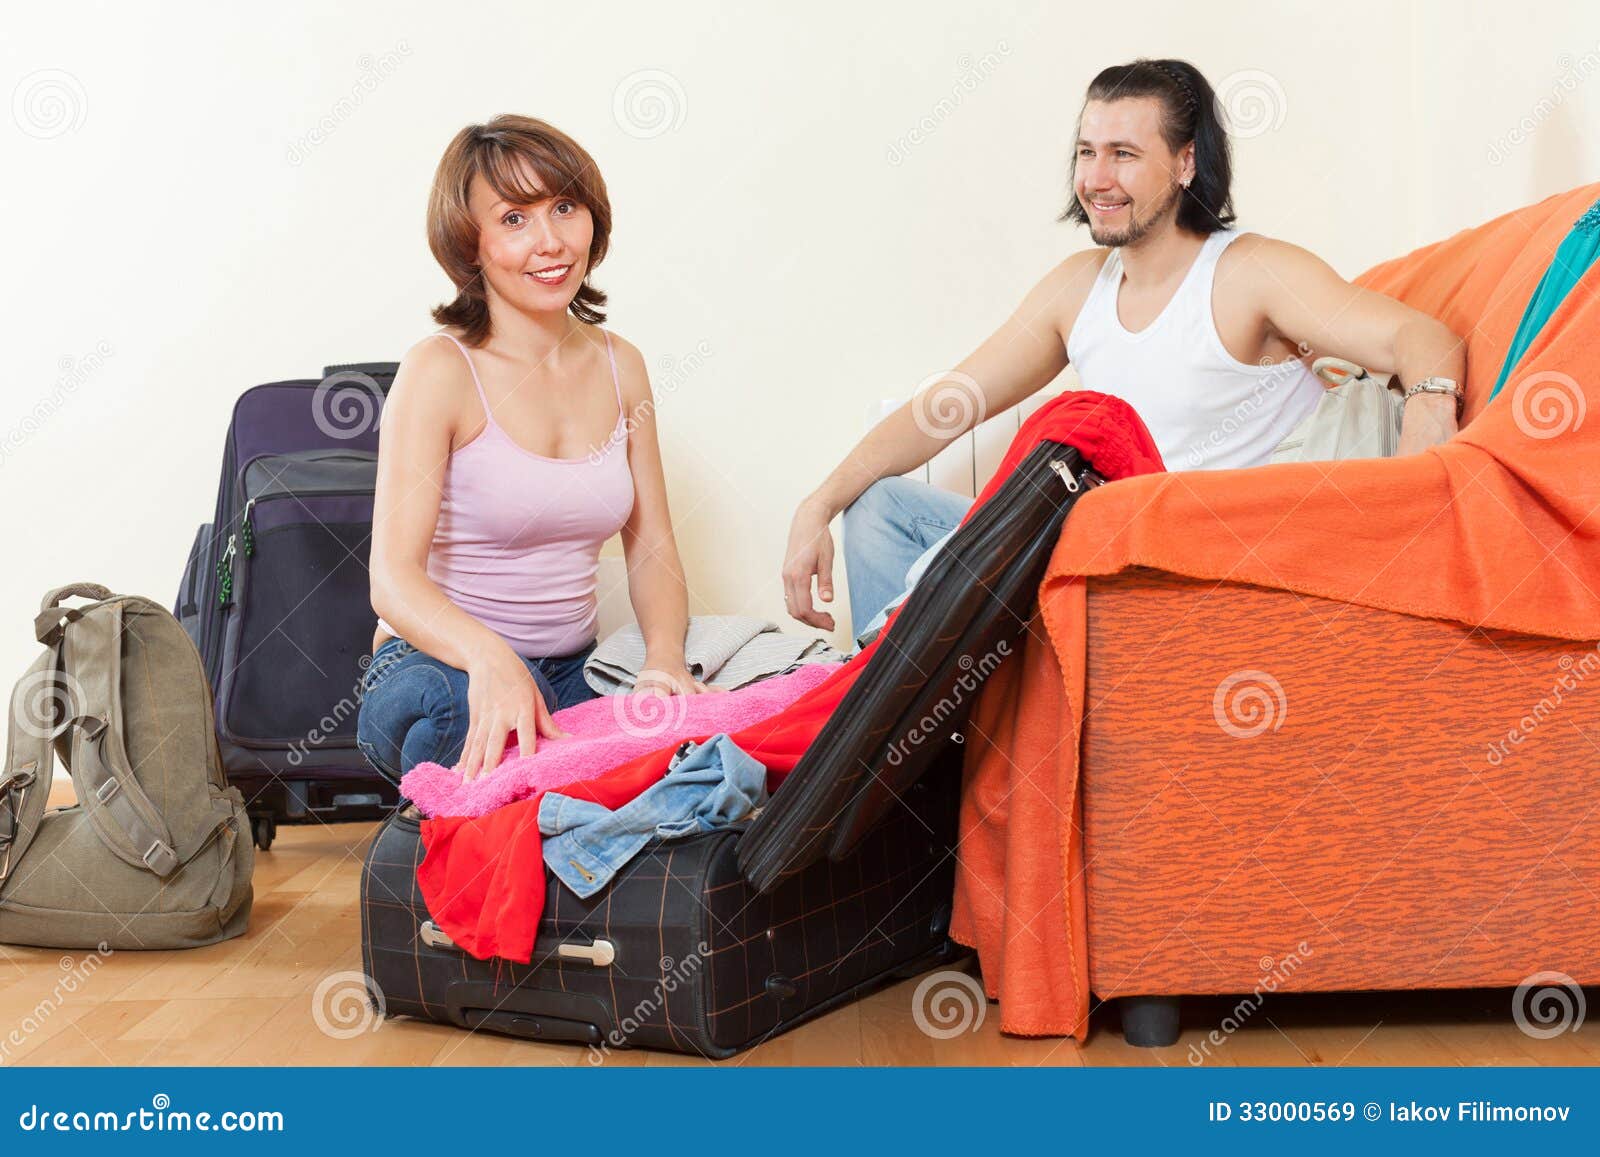 Дочь уехала в командировку. Муж собирает вещи. Девушка с чемоданом. Женщина собирает вещи. Мужчина и женщина с чемоданами.